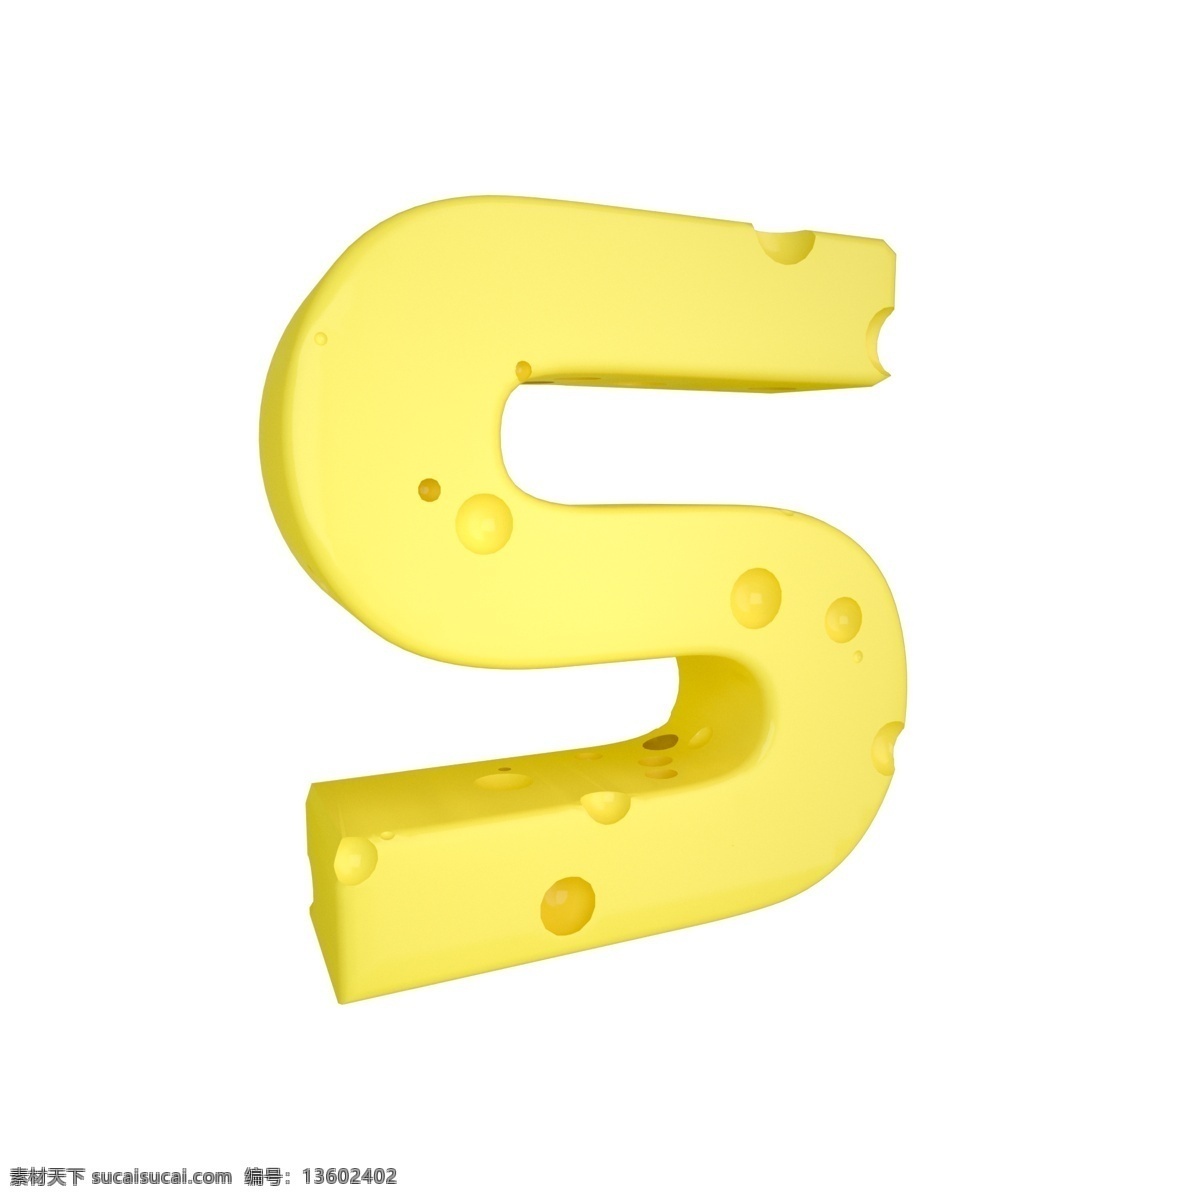 c4d 创意 奶酪 字母 s 装饰 3d 黄色 立体 食物 平面海报配图 电商淘宝装饰 可爱 柔和 字母s